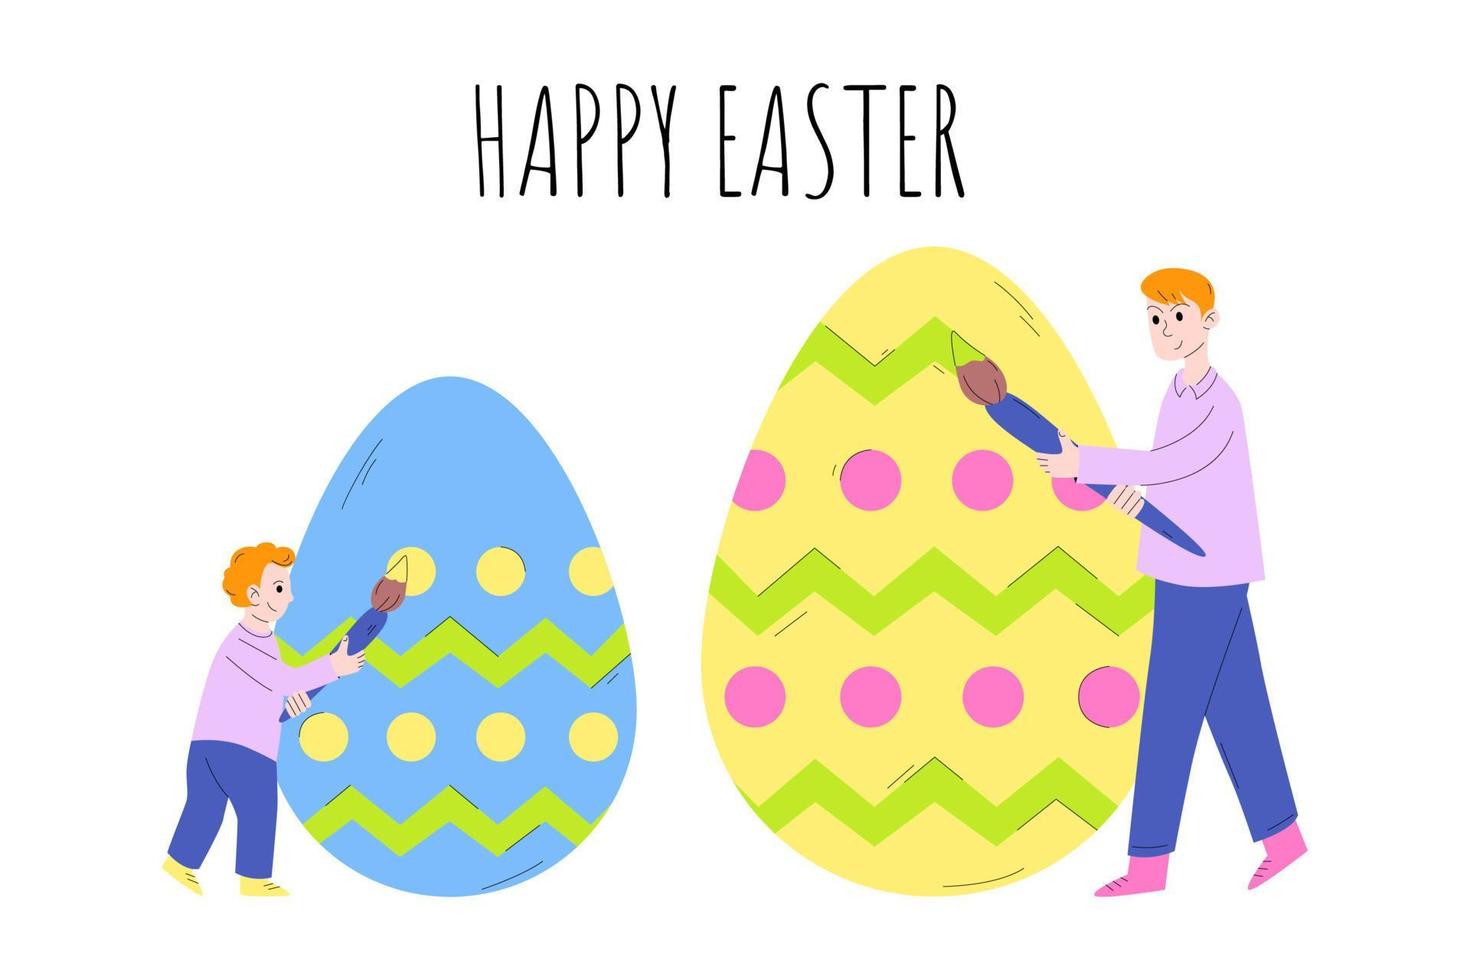 små far och son målar påskägg. glad påsk. konceptet att förbereda för påsk, fira påsk med hela familjen. vektor illustration i tecknad stil.